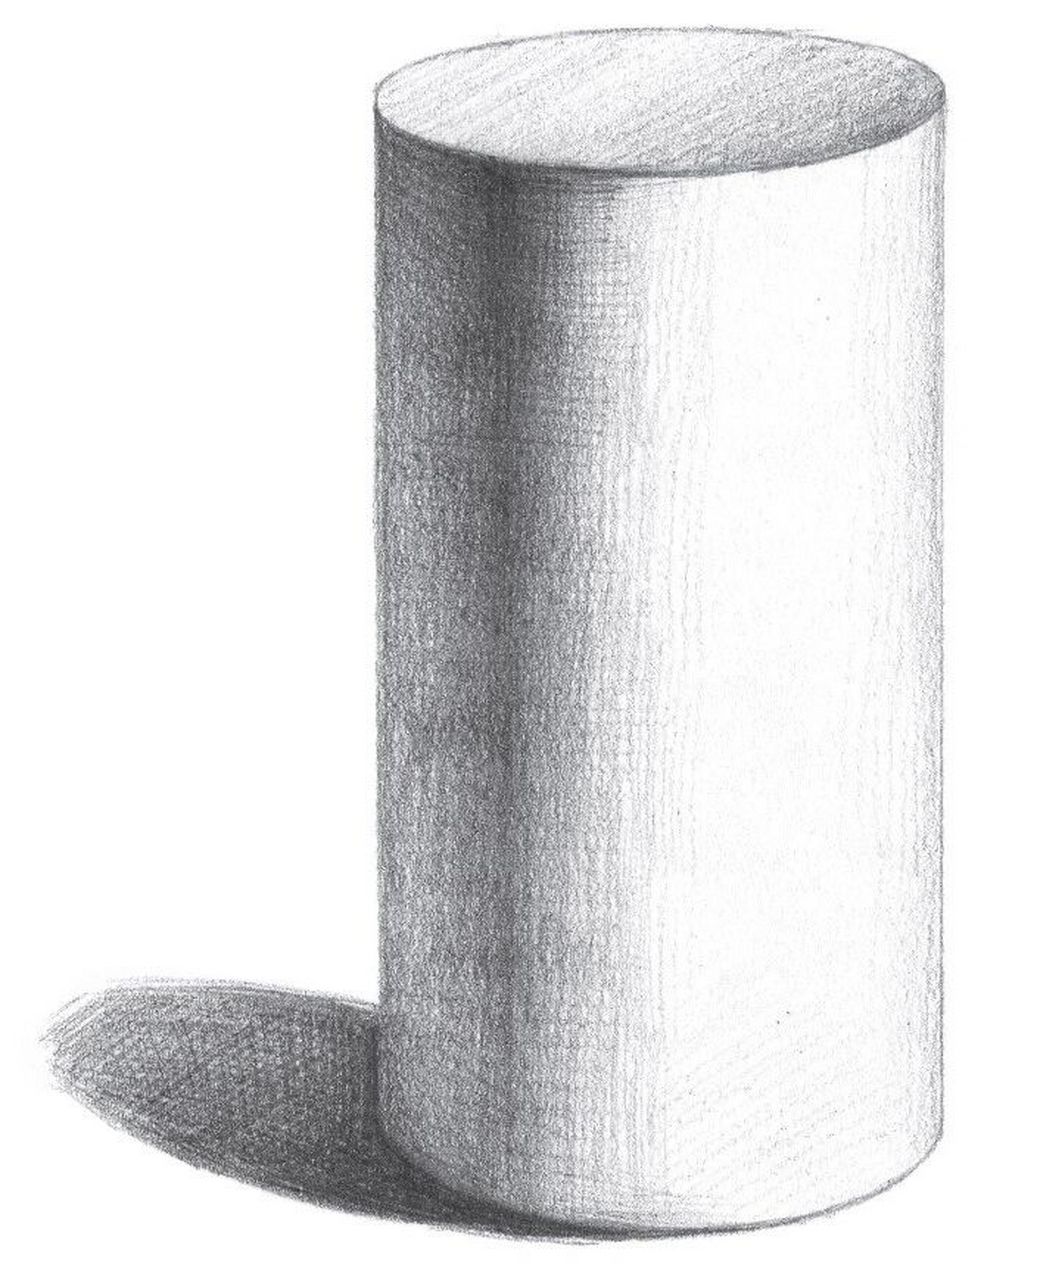 用hb铅笔画十字线,标出圆柱体的长度和宽度,根据辅助线画出圆柱体上下